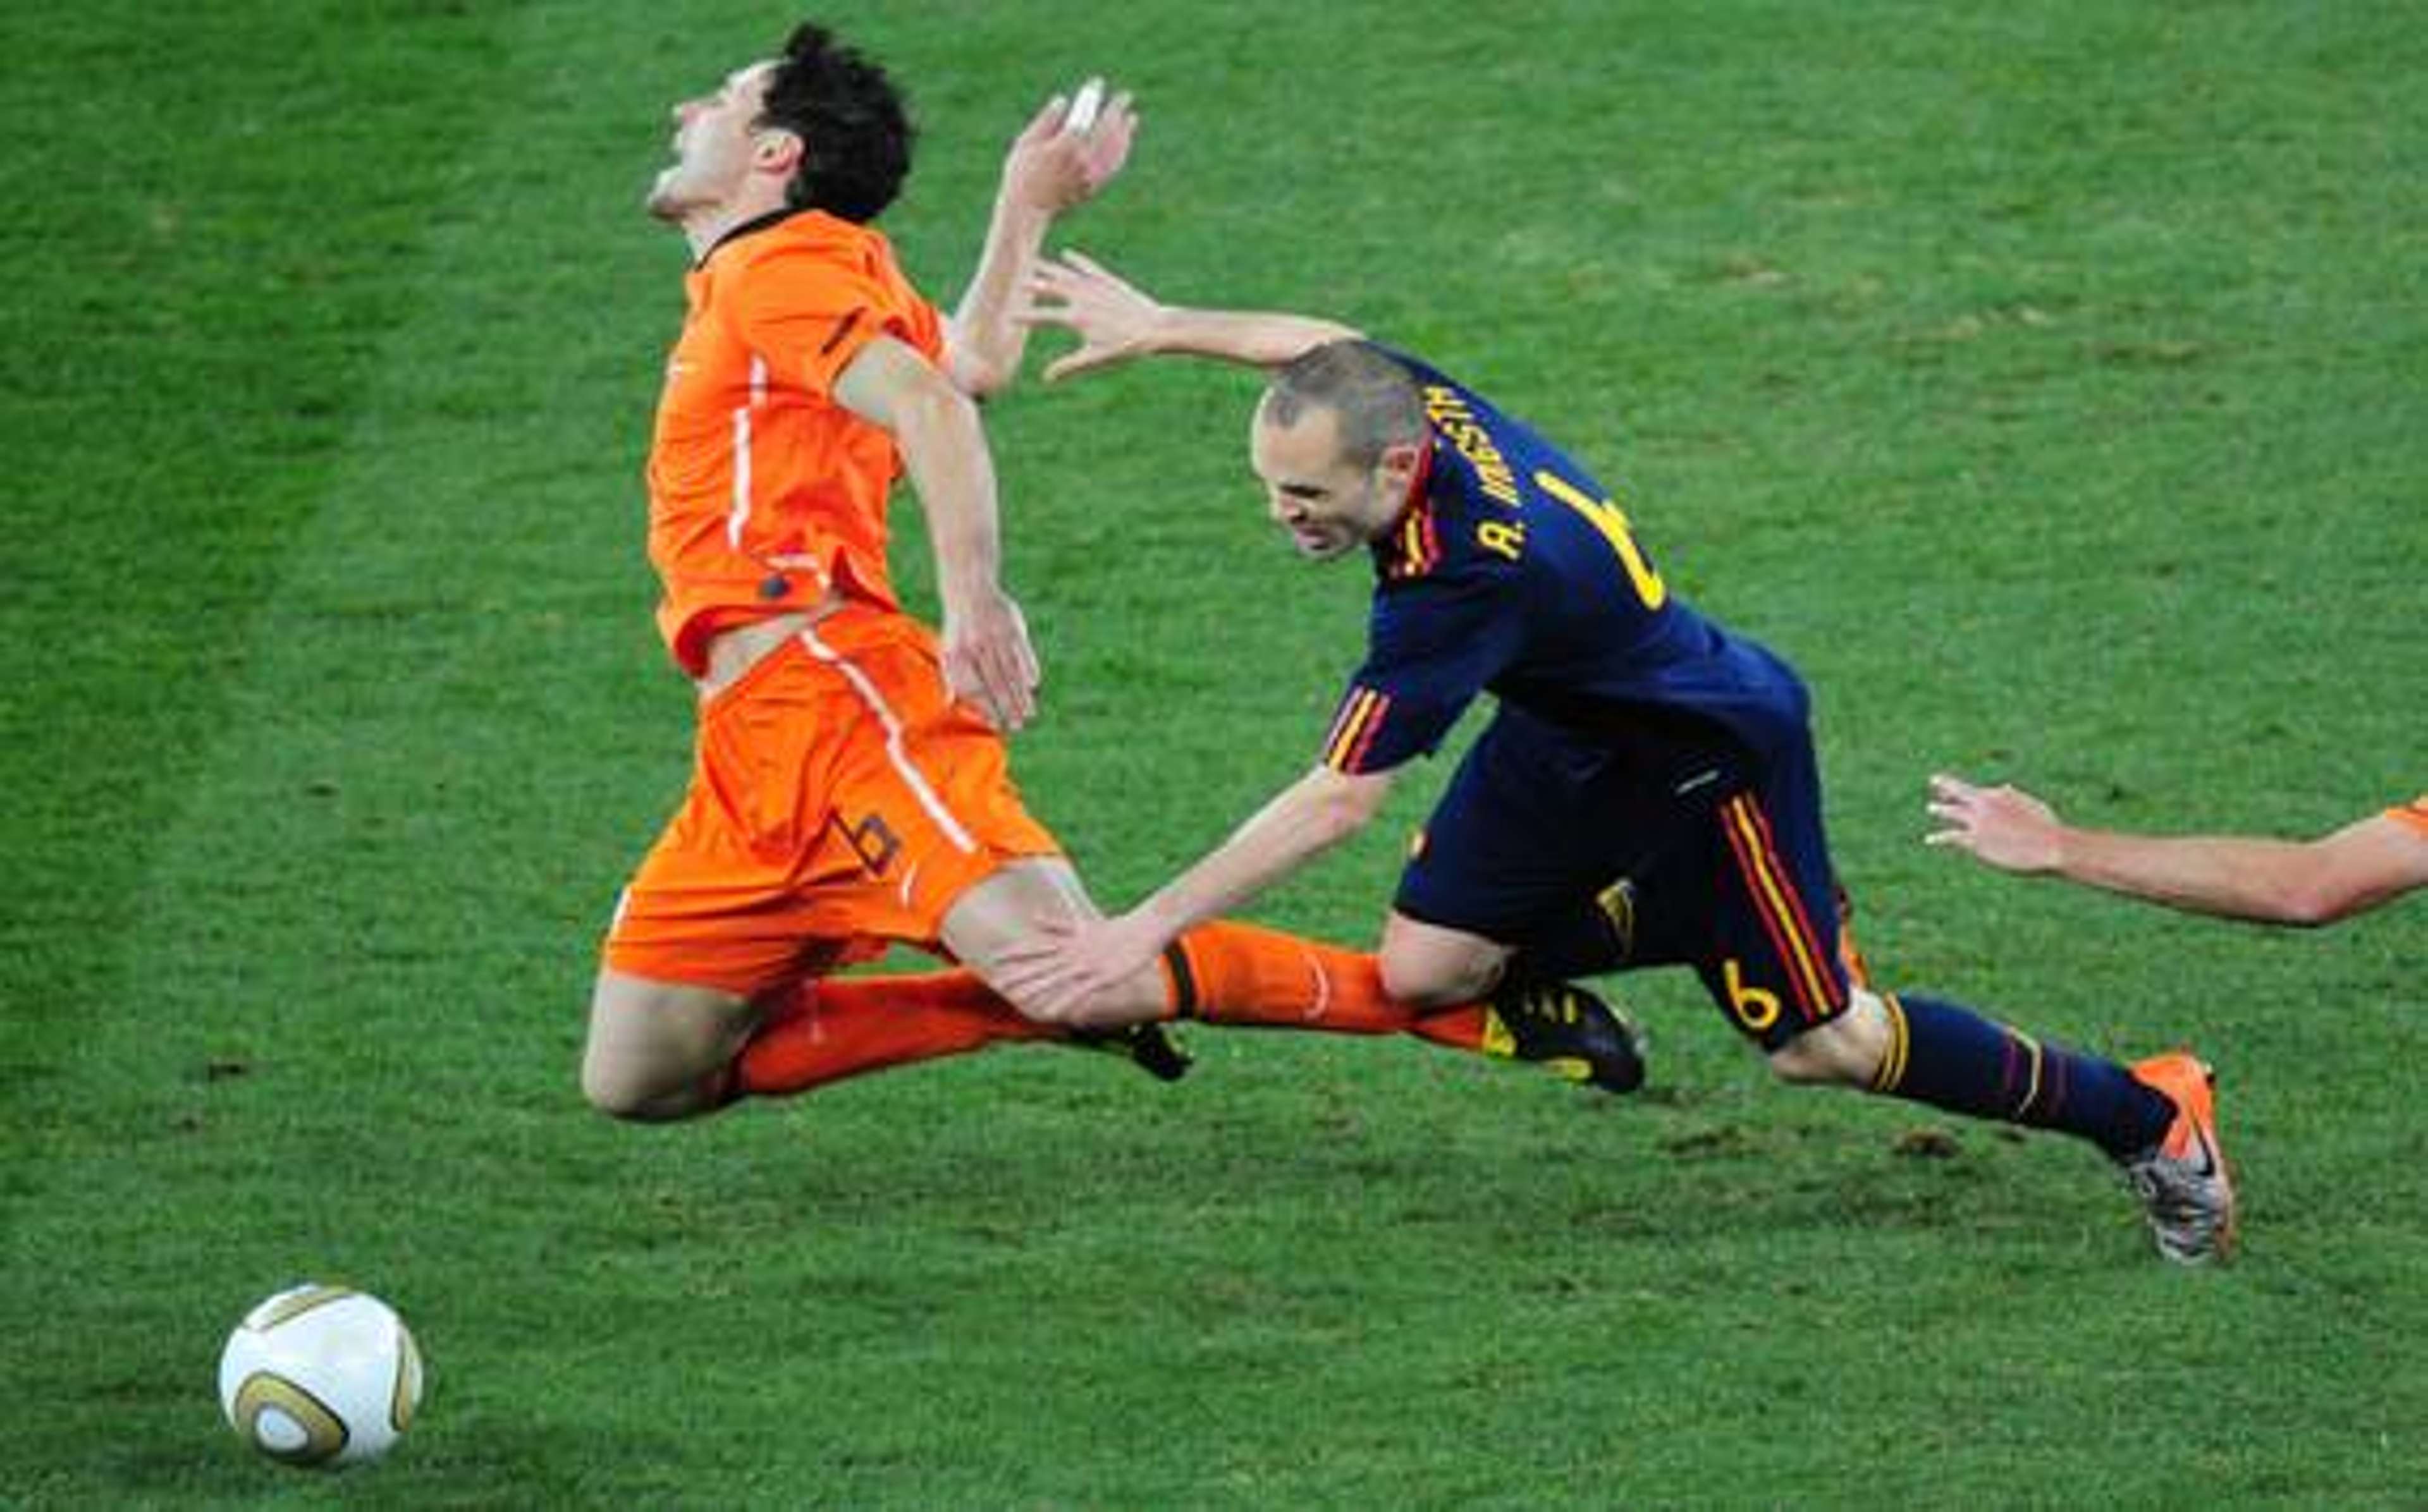 Van Bommel Iniesta, Netherlands - Spain 2010